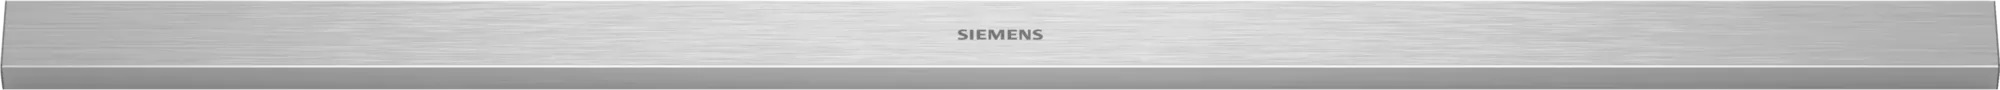 Bild von Siemens LZ49551 Griffleiste Edelstahl